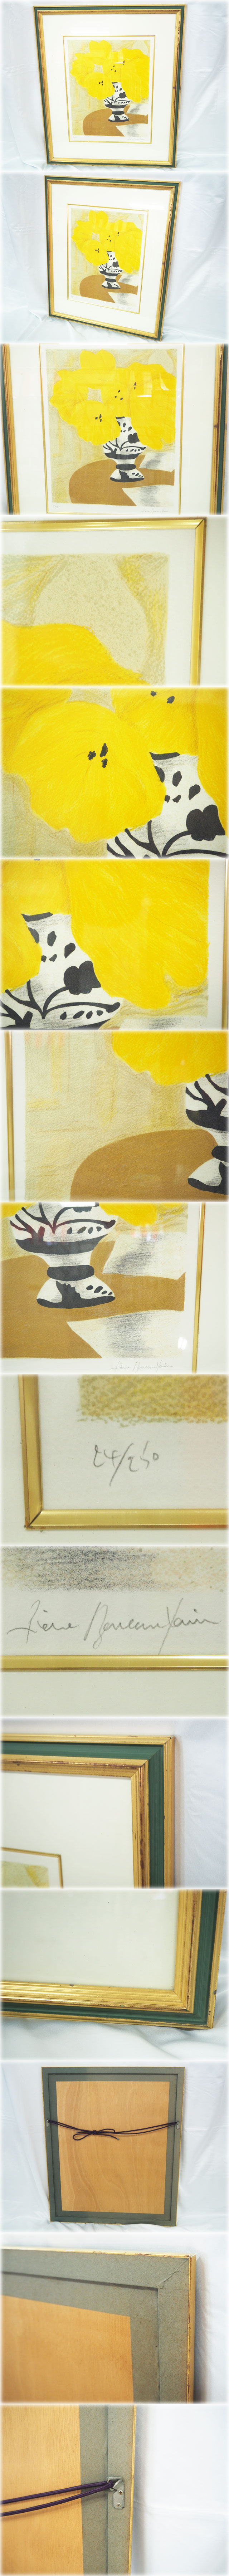 新作限定SALEピエール・ボンコンパン リトグラフ 「テーブルの上の黄色いブーケ」 額付 鉛筆サインNo.24/250 Pierre Boncompain 石版画、リトグラフ